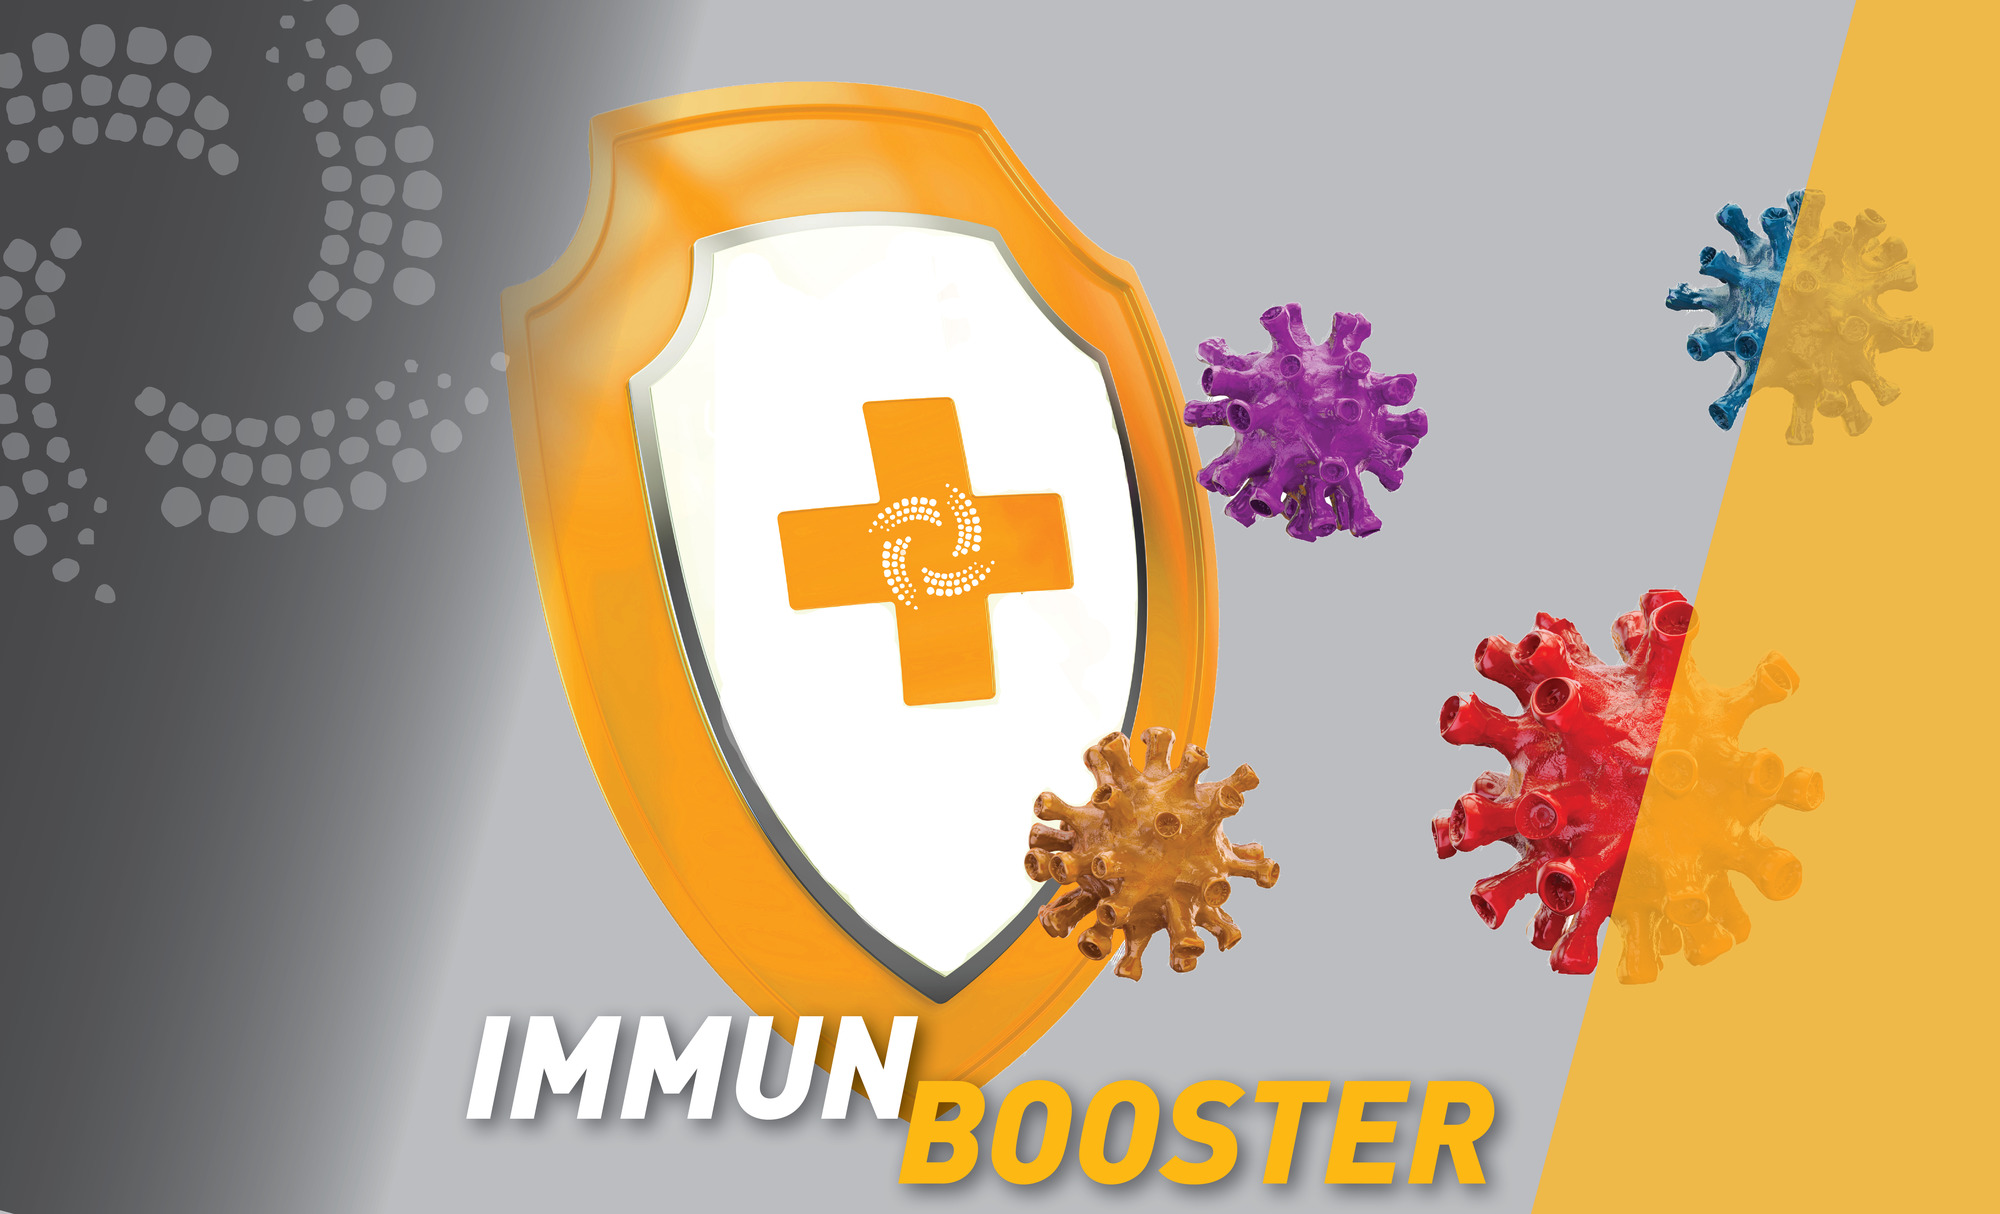 Immunbooster - #bleib gesund